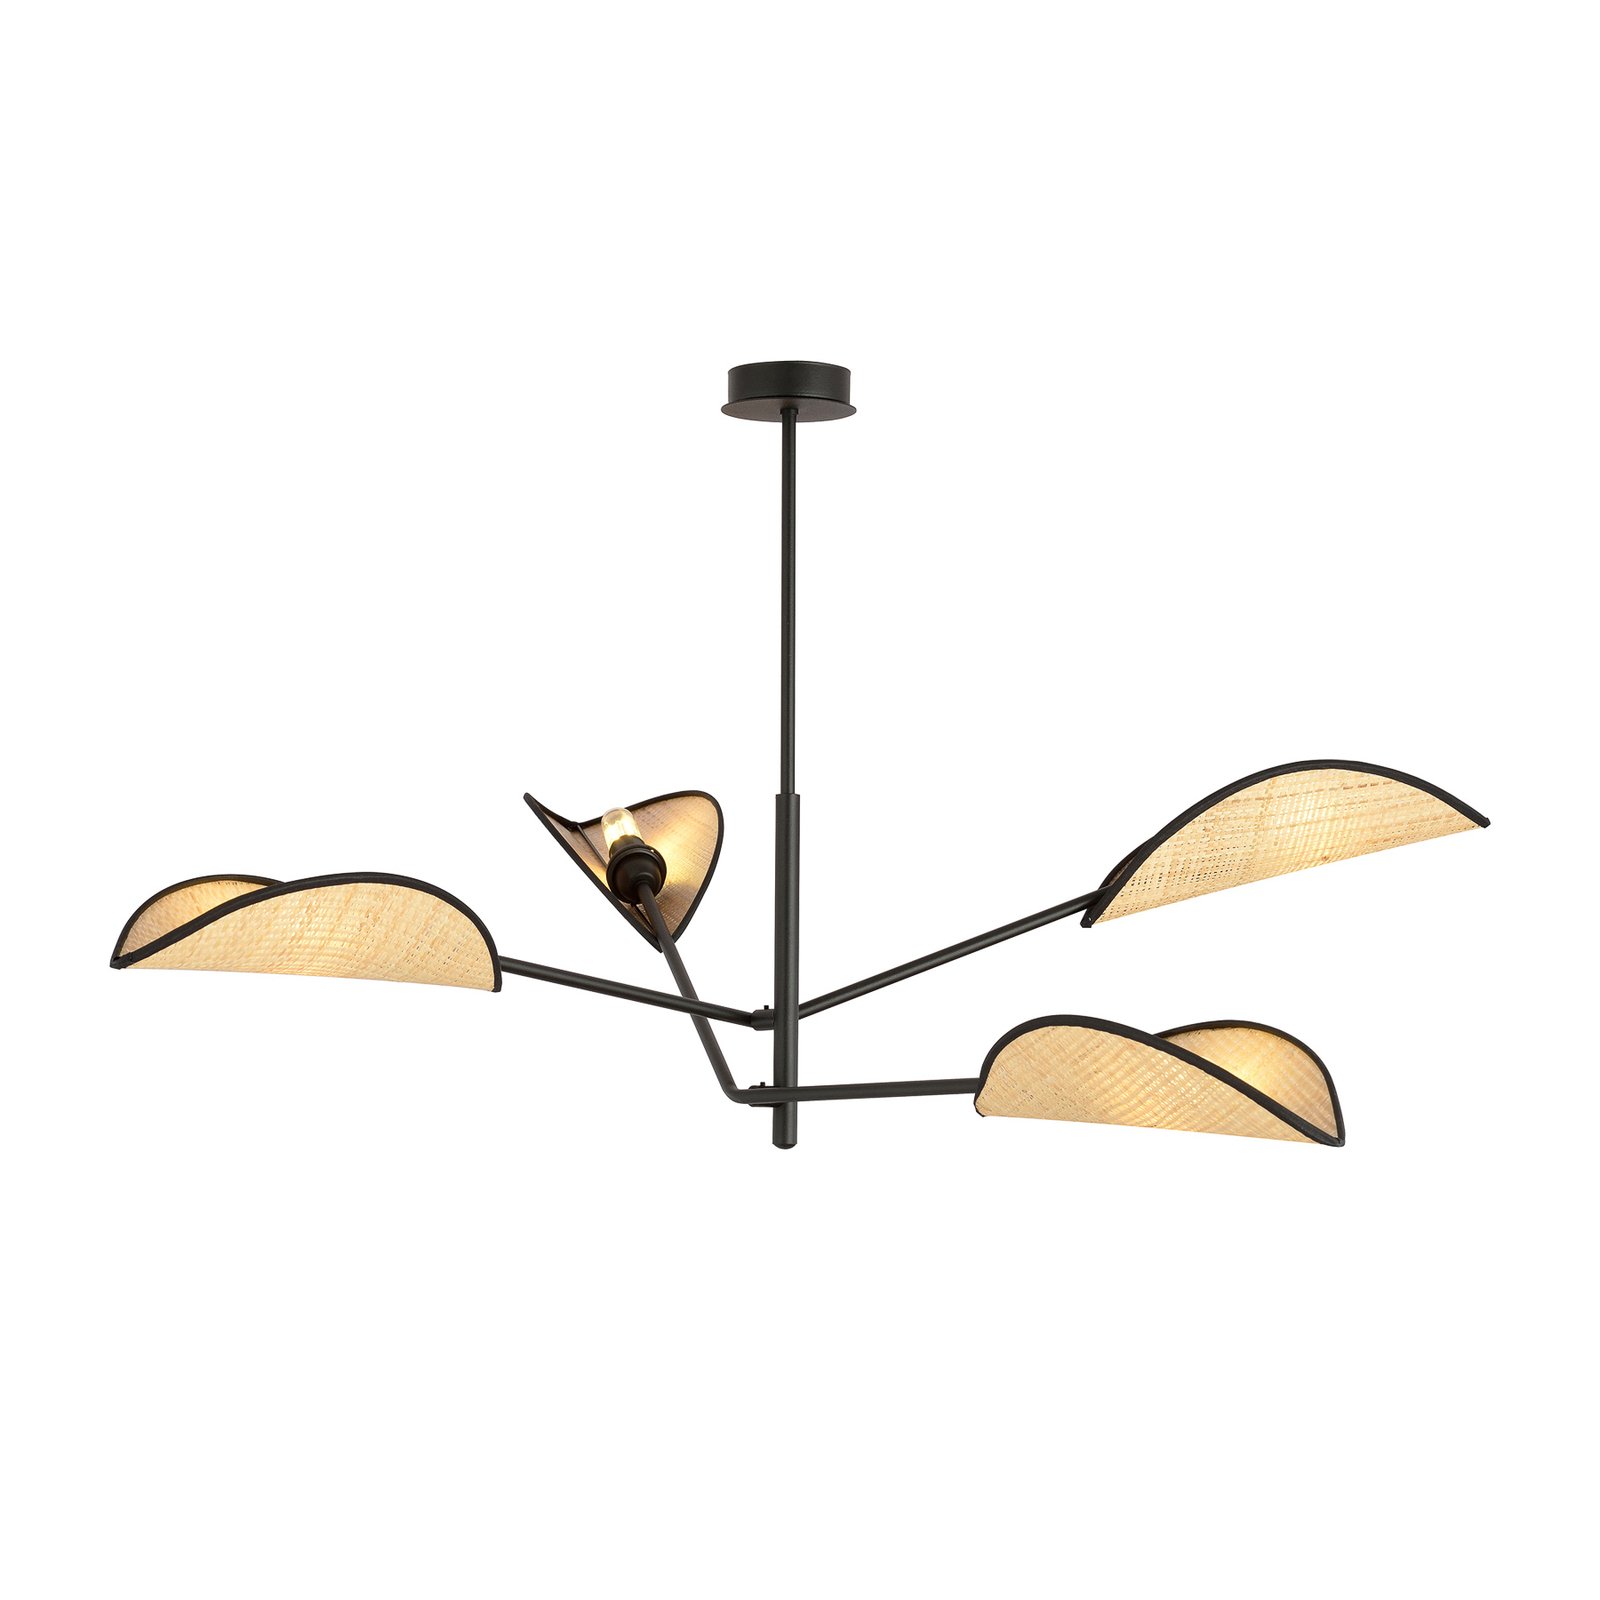 Hanglamp Vene, zwart/rotanoptiek, 4-lamps